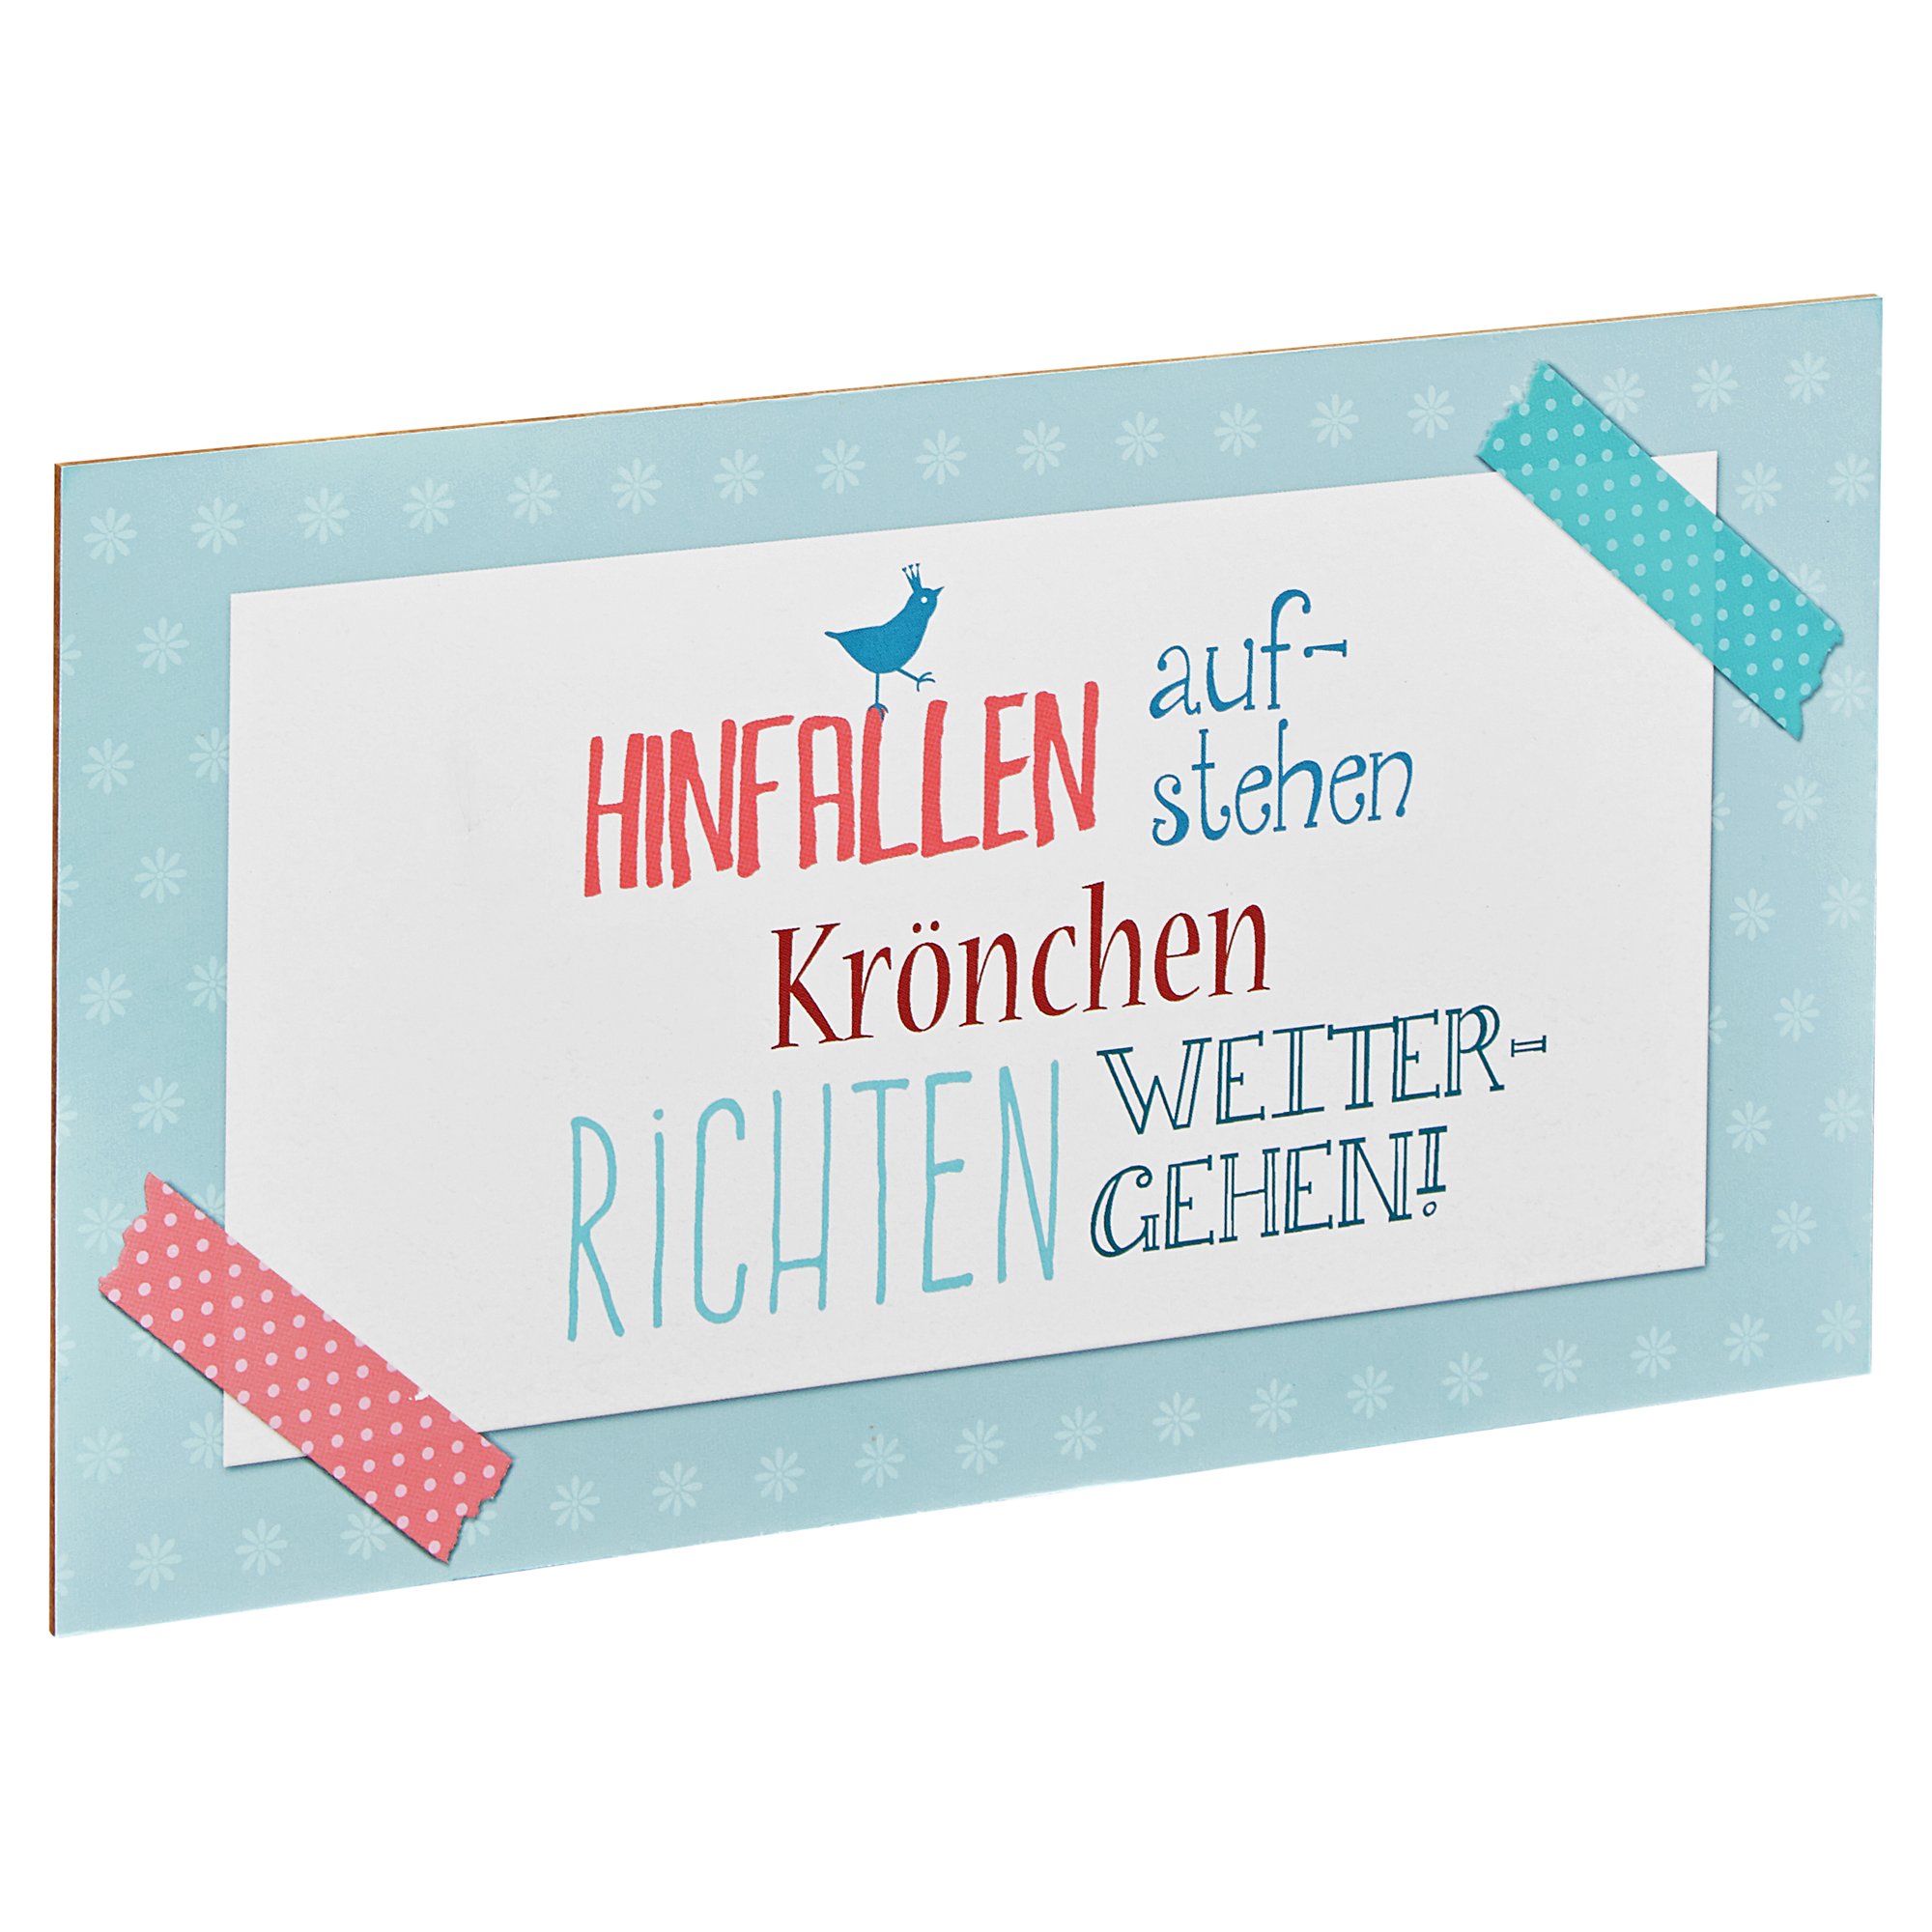 Decopanel "Weitergehen" 27 x 15 cm + product picture